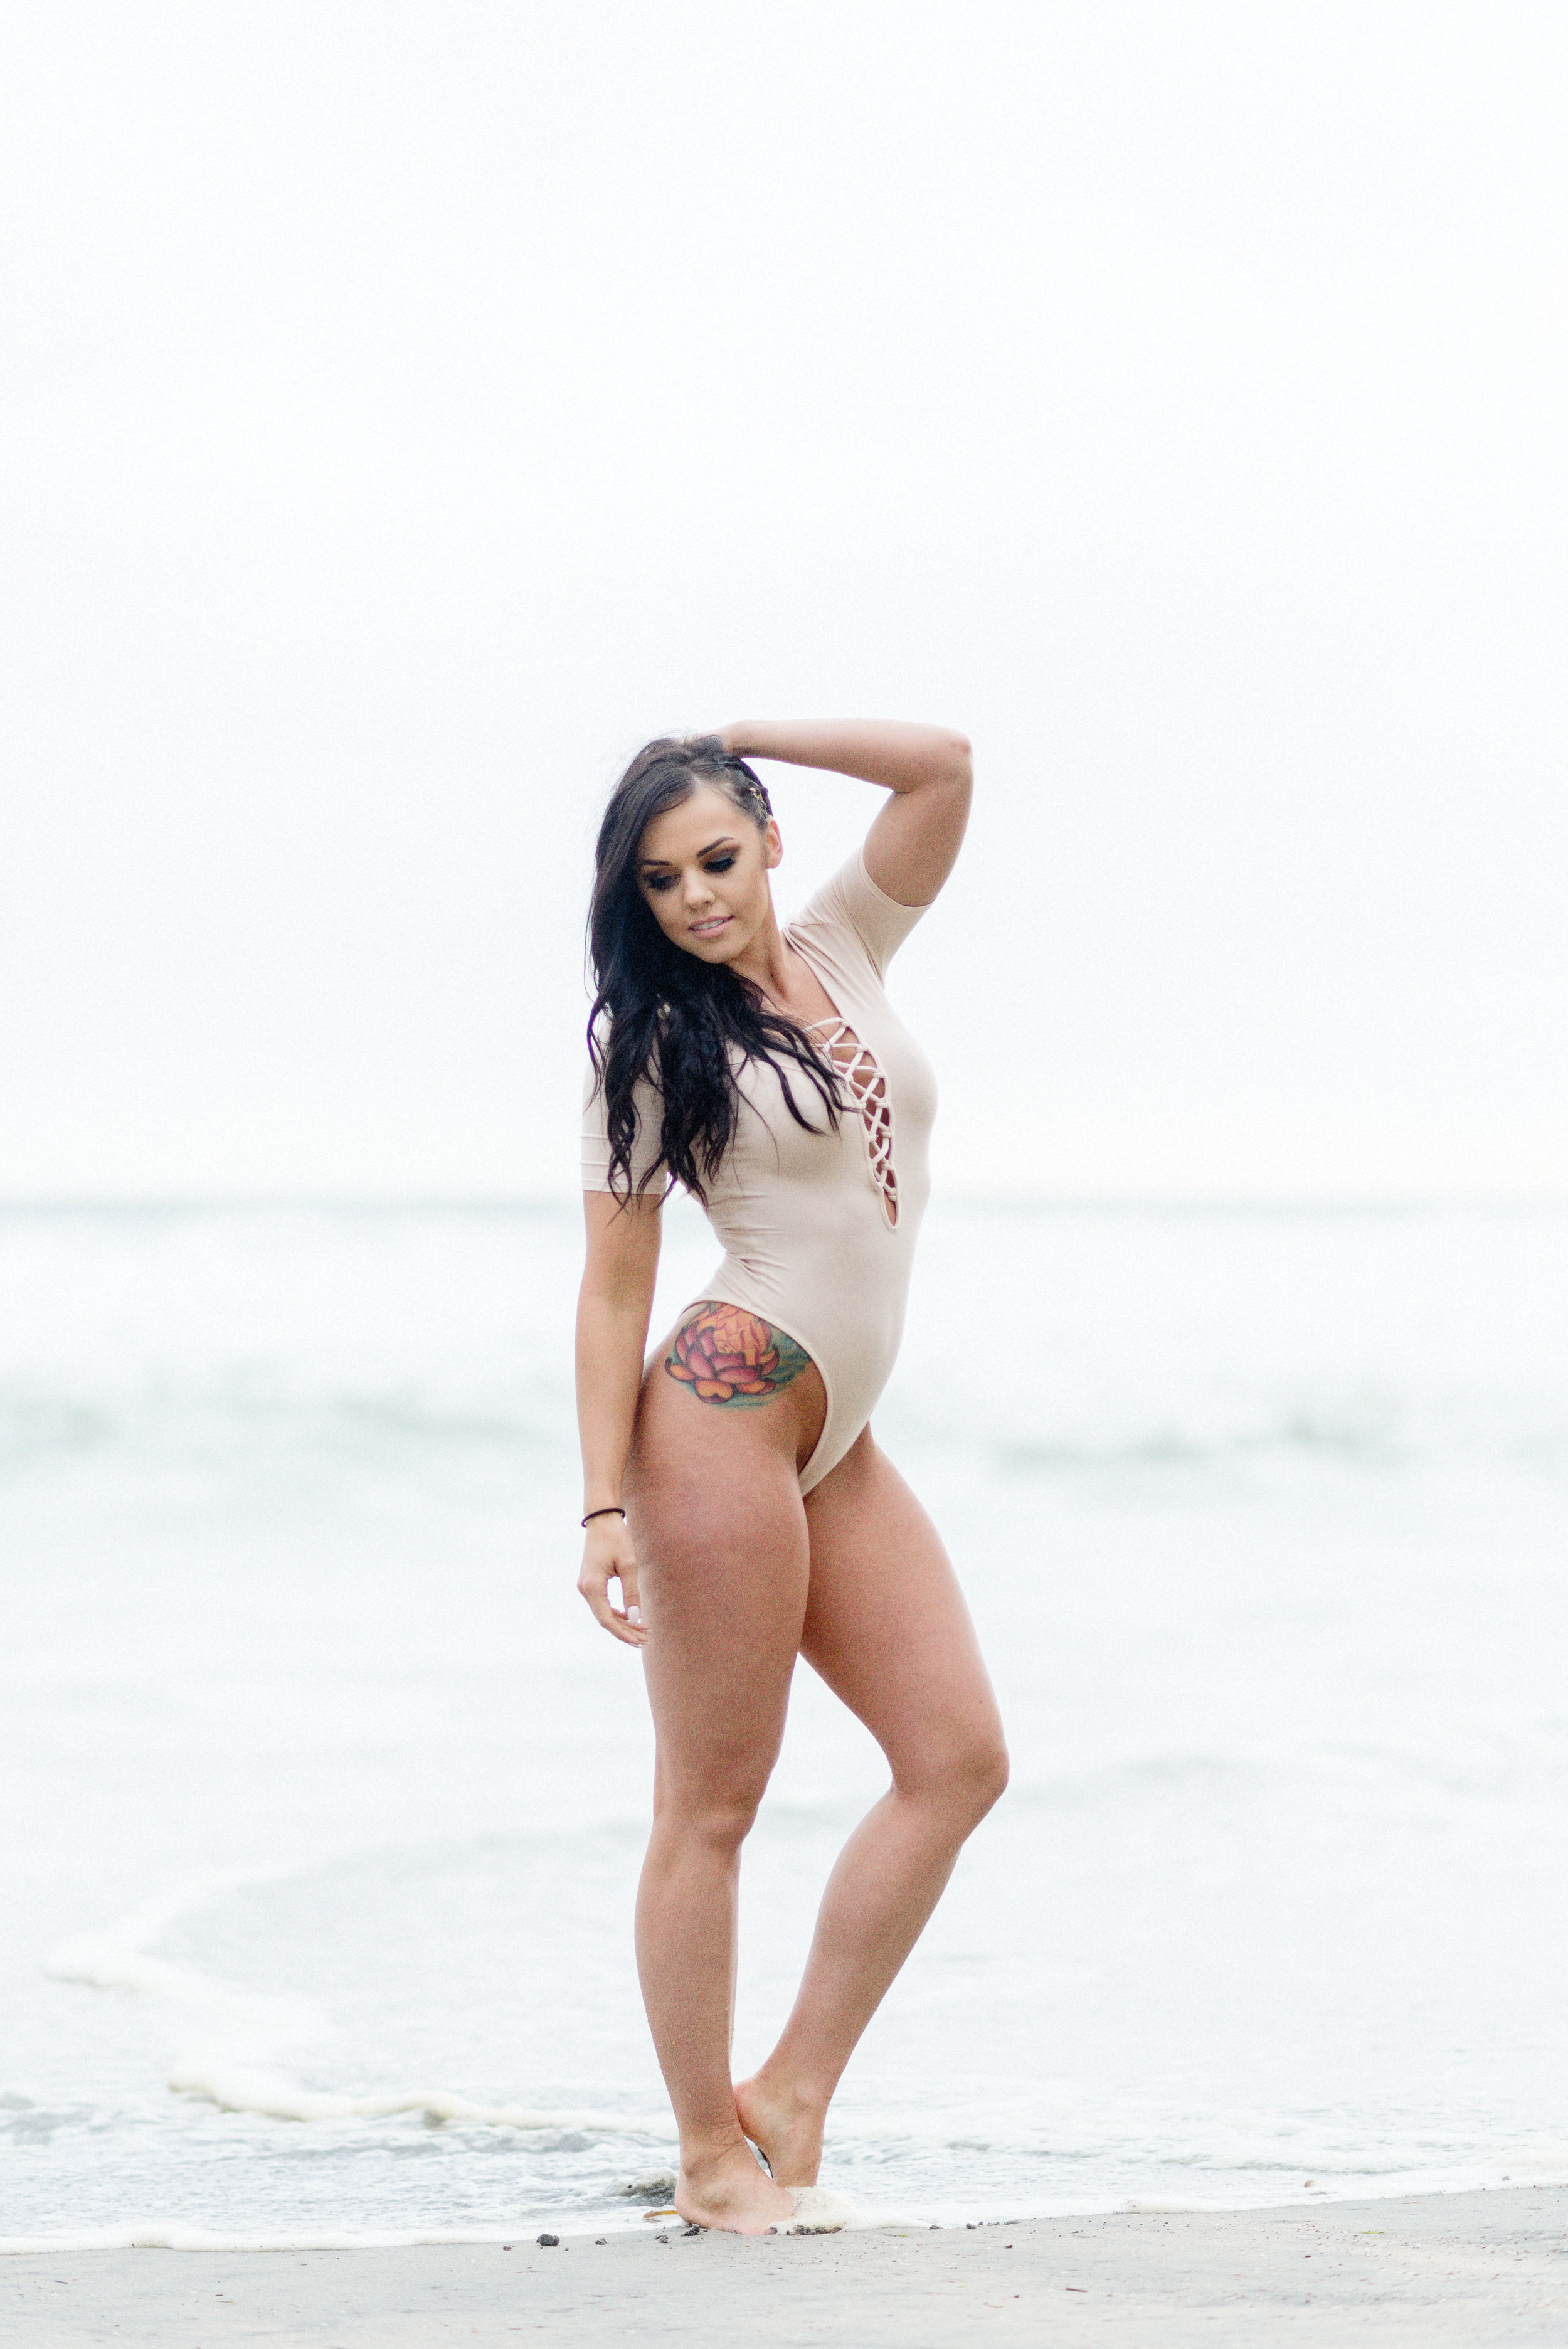 San Diego Portrait Photography | Fitness | Bikini Model | Beach 